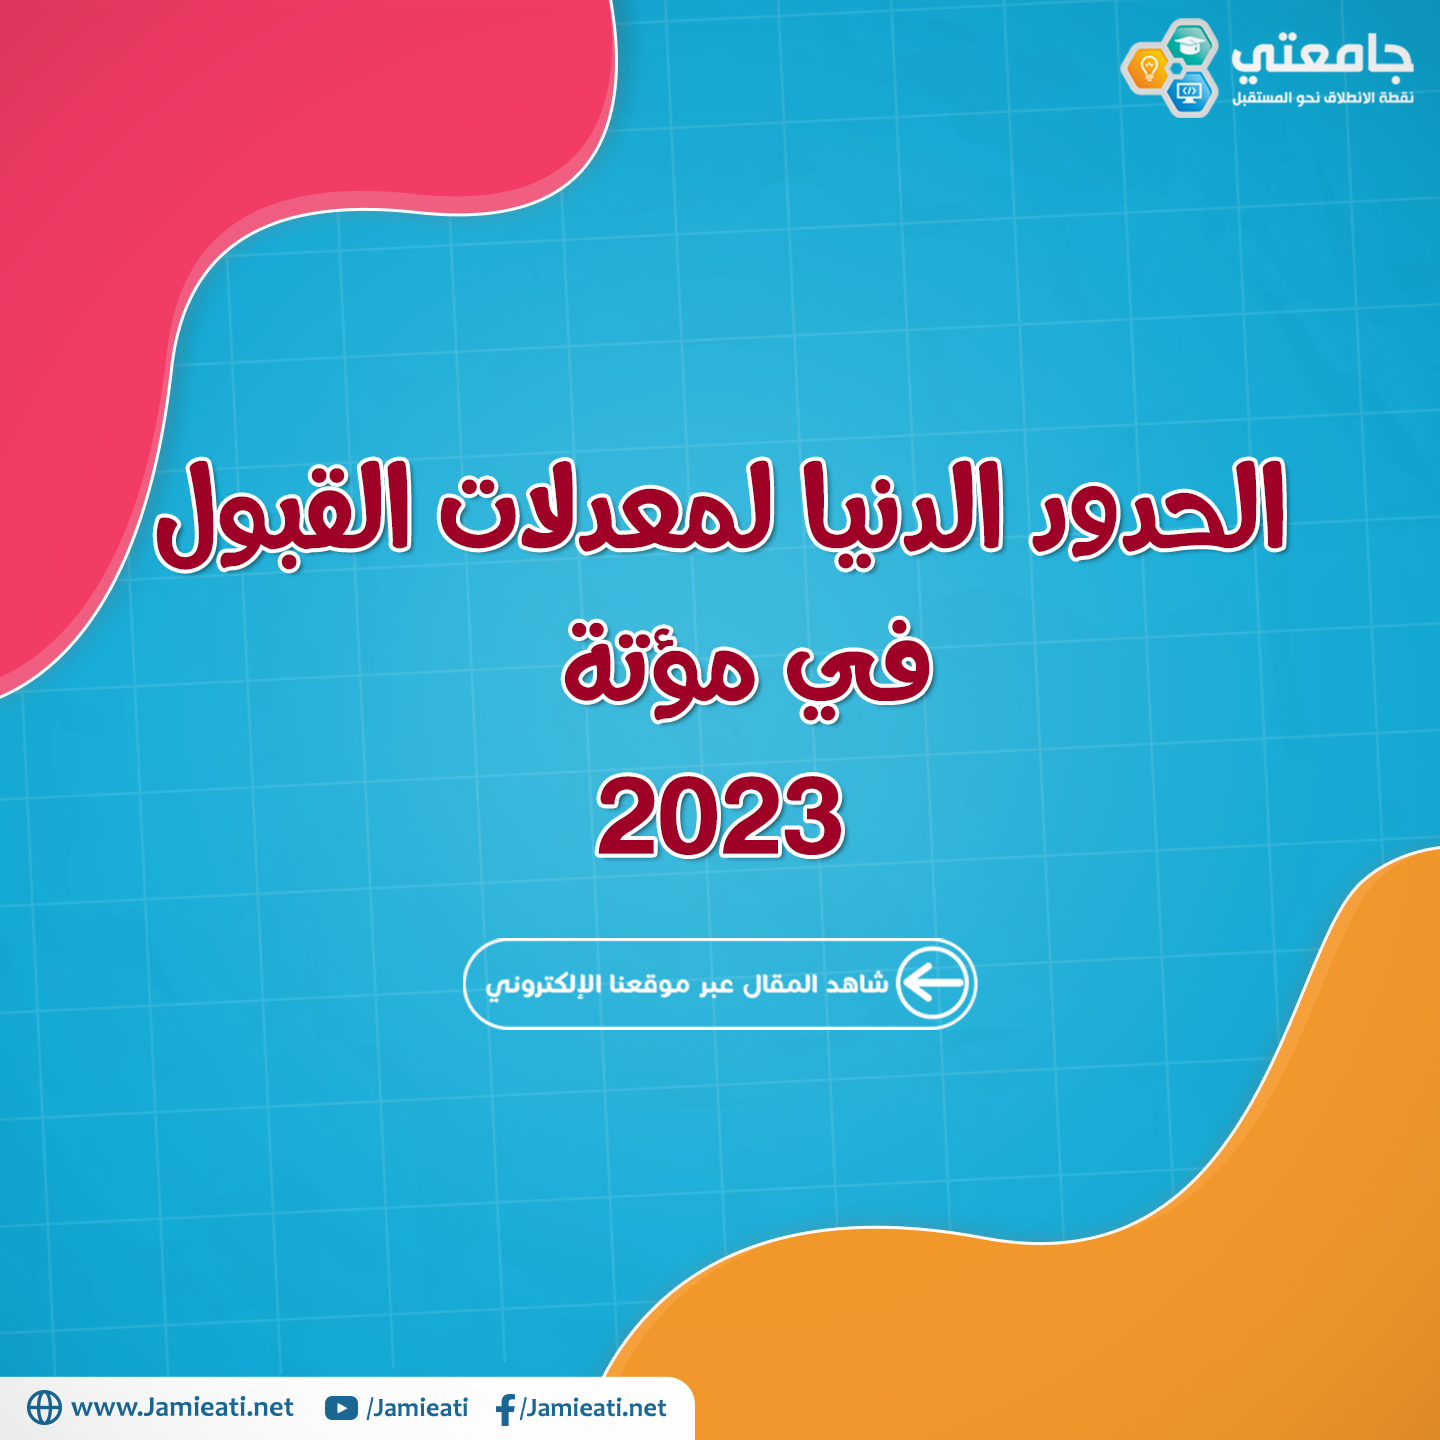 الحدود الدنيا لمعدلات القبول في جامعة مؤتة 2023